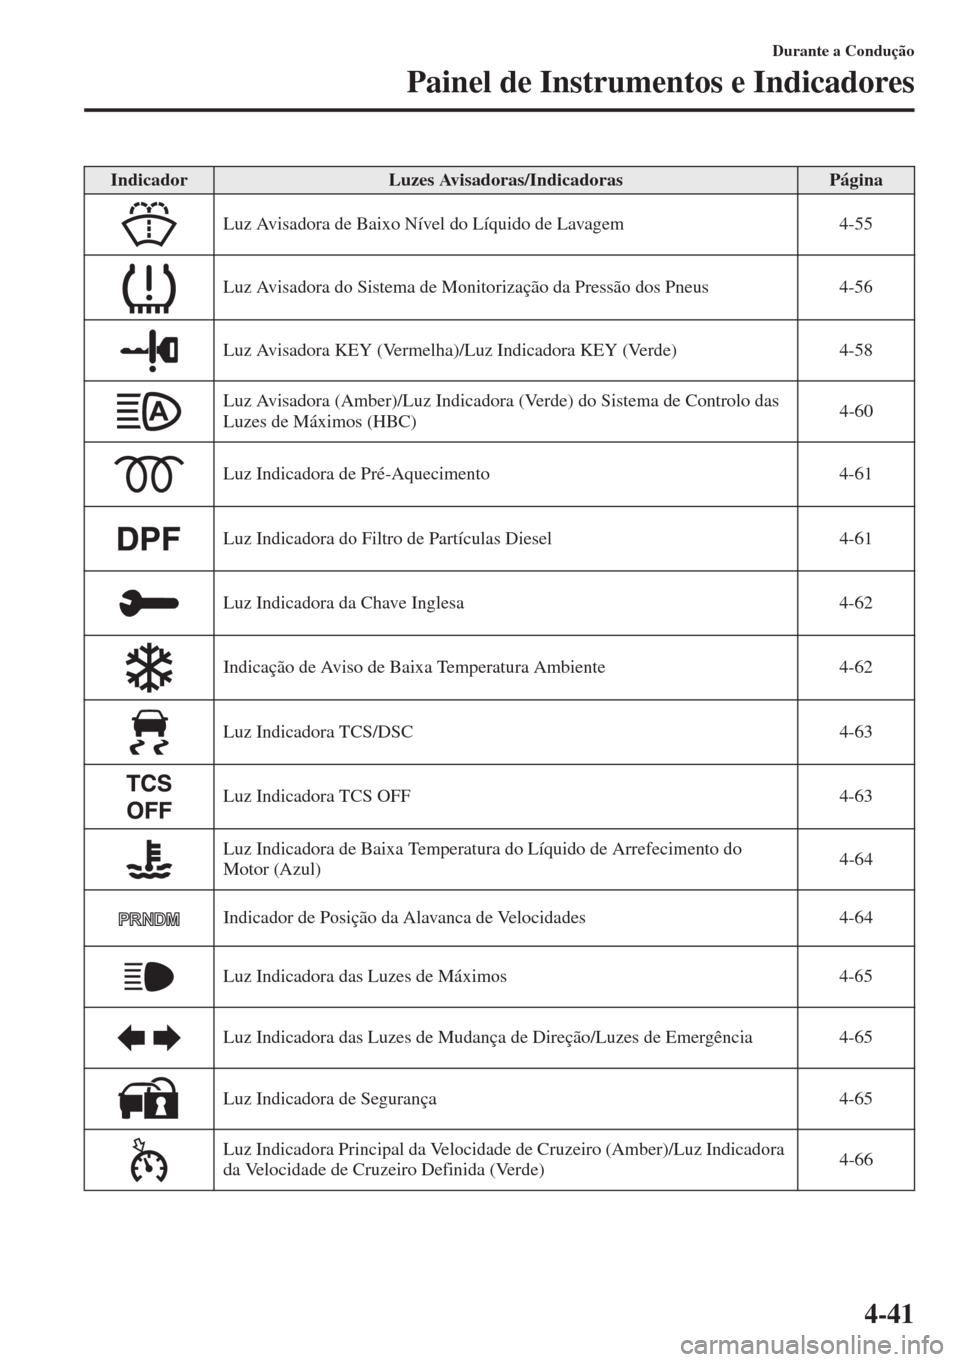 MAZDA MODEL CX-5 2015  Manual do proprietário (in Portuguese) 4-41
Durante a Condução
Painel de Instrumentos e Indicadores
IndicadorLuzes Avisadoras/IndicadorasPágina
Luz Avisadora de Baixo Nível do Líquido de Lavagem 4-55
Luz Avisadora do Sistema de Monito